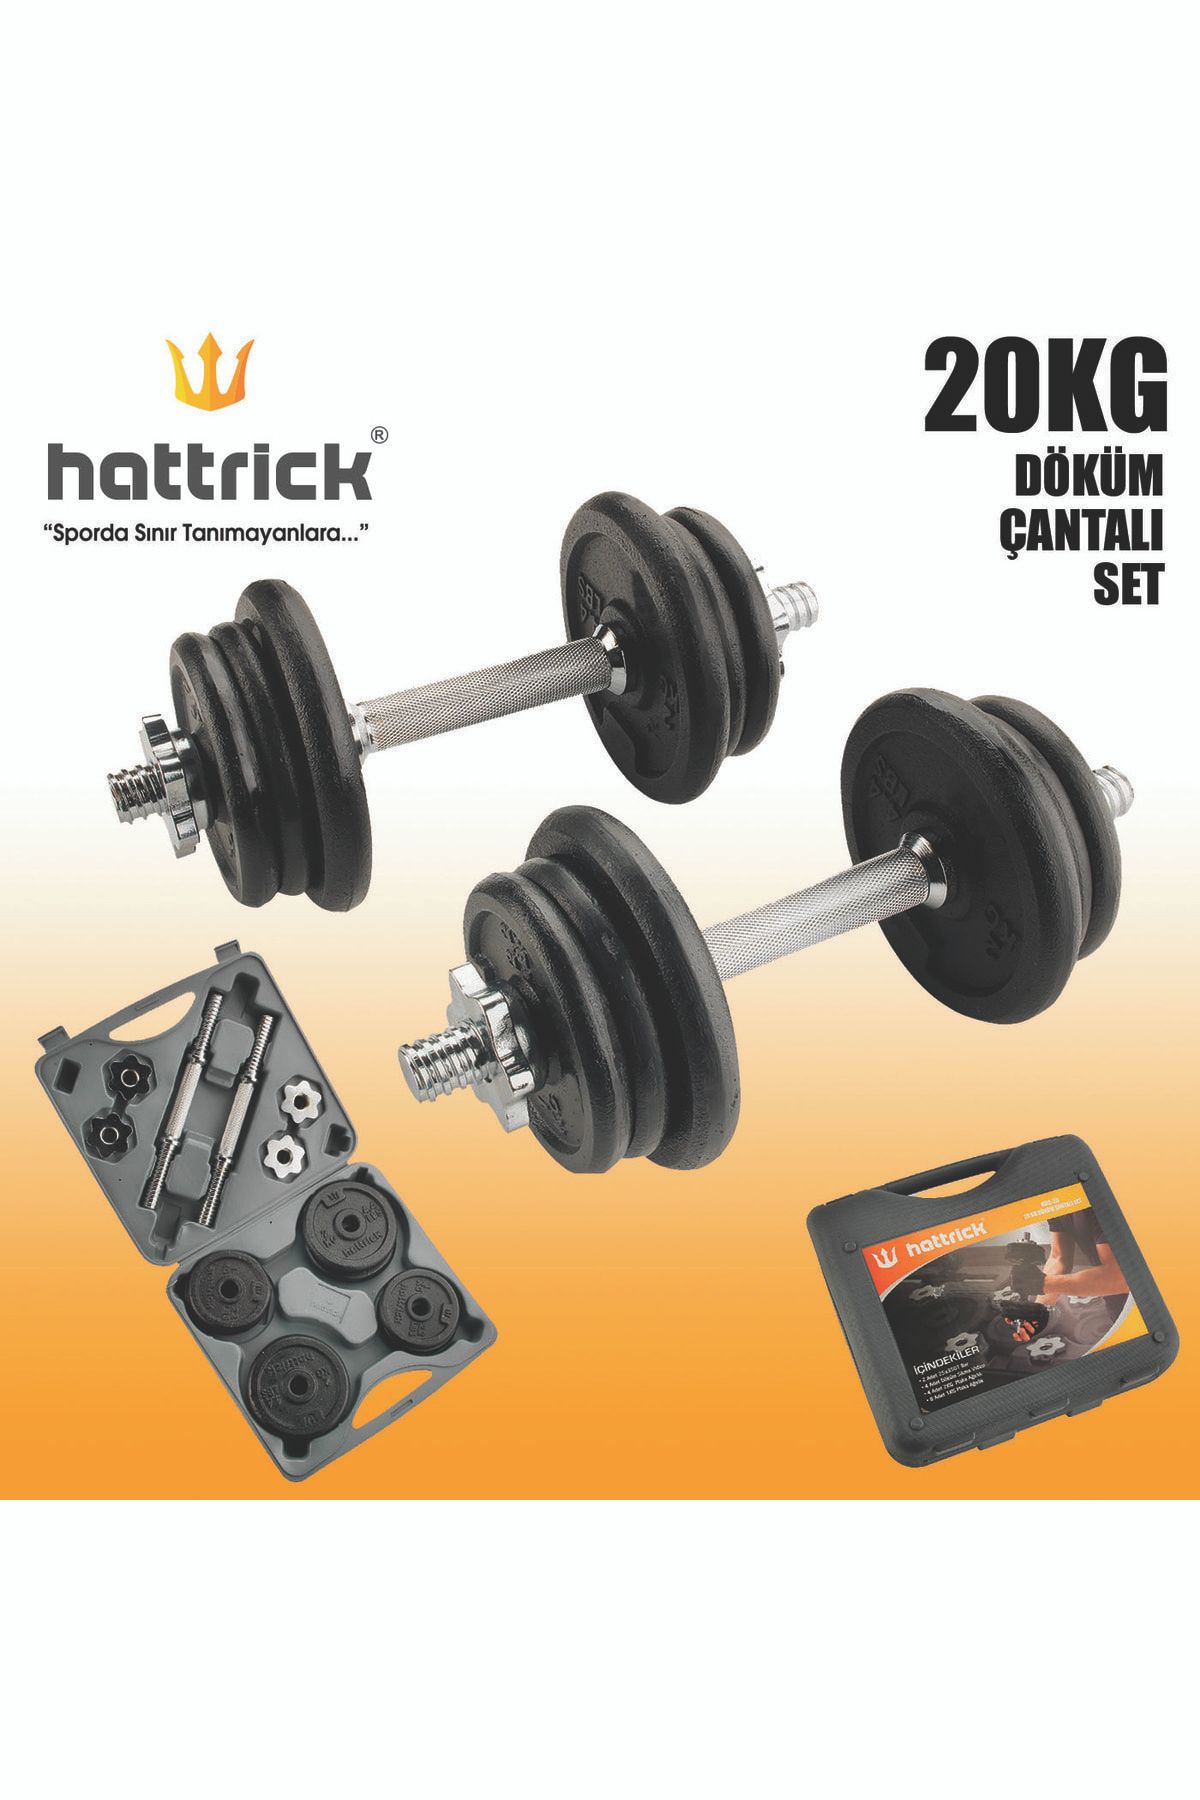 Hattrick Hdc20 Döküm Çantalı Set 20 kg